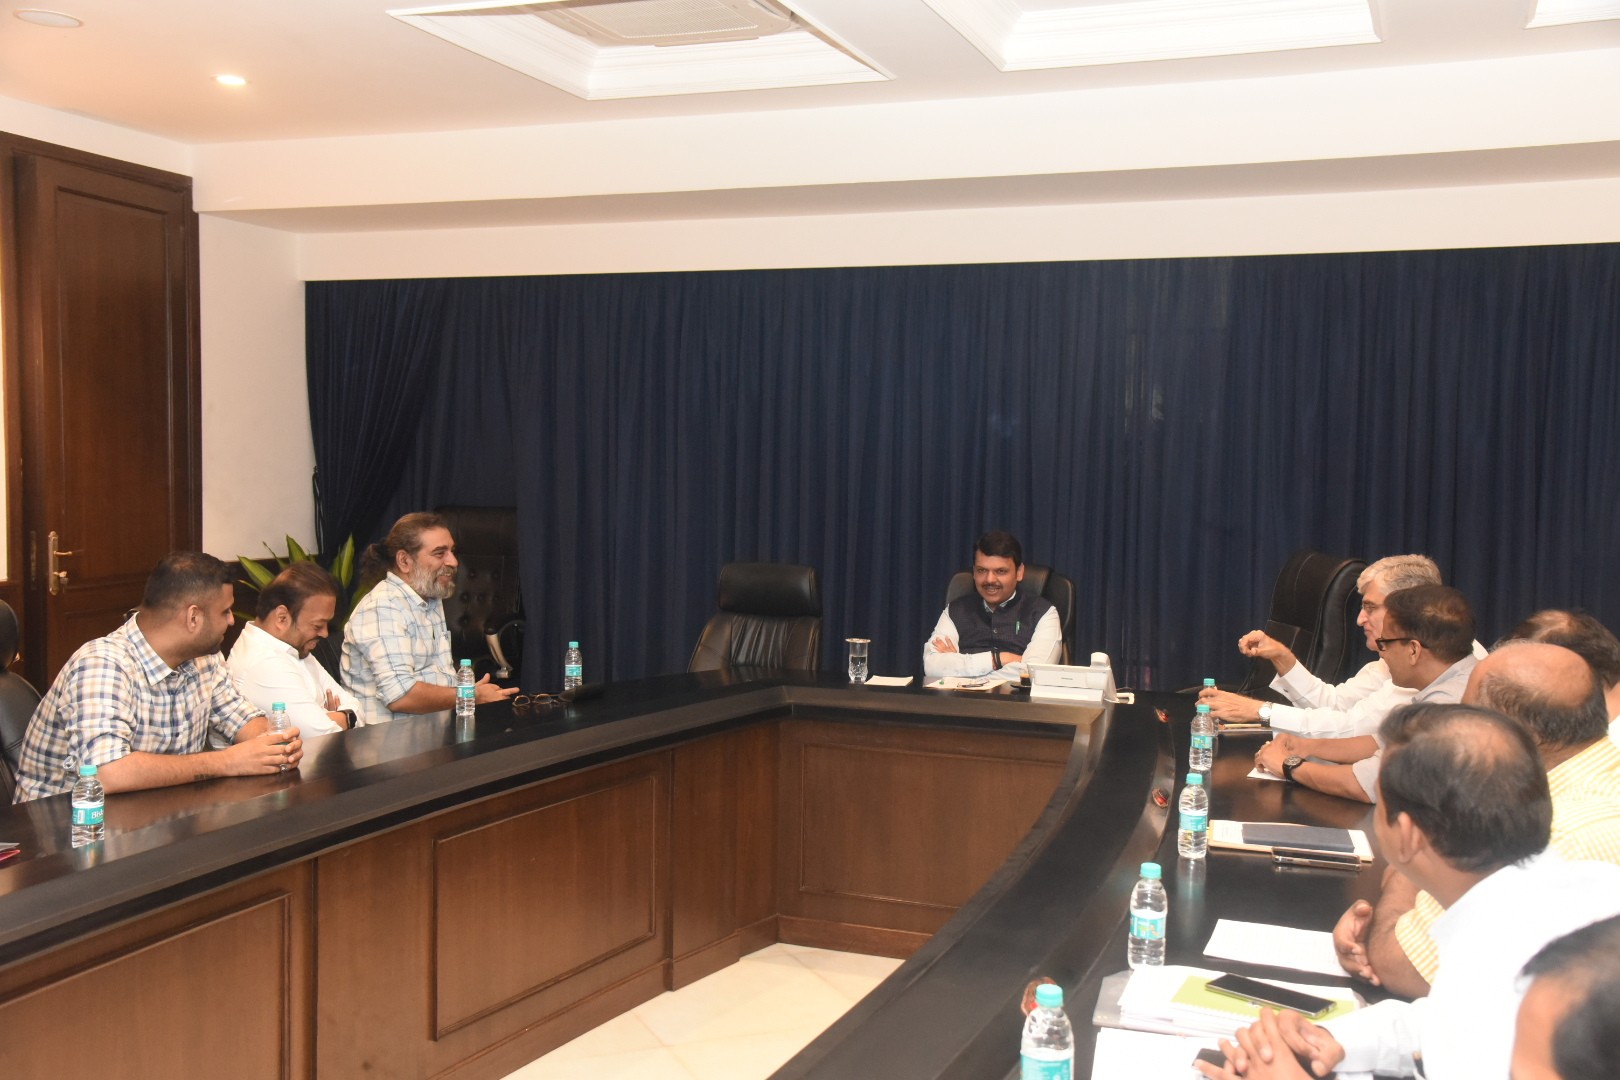 उपमुख्यमंत्री देवेंद्र फडणवीस यांच्या अध्यक्षतेखाली ‘मुंबई प्रेस क्लब’ पुनर्विकास संदर्भात बैठक